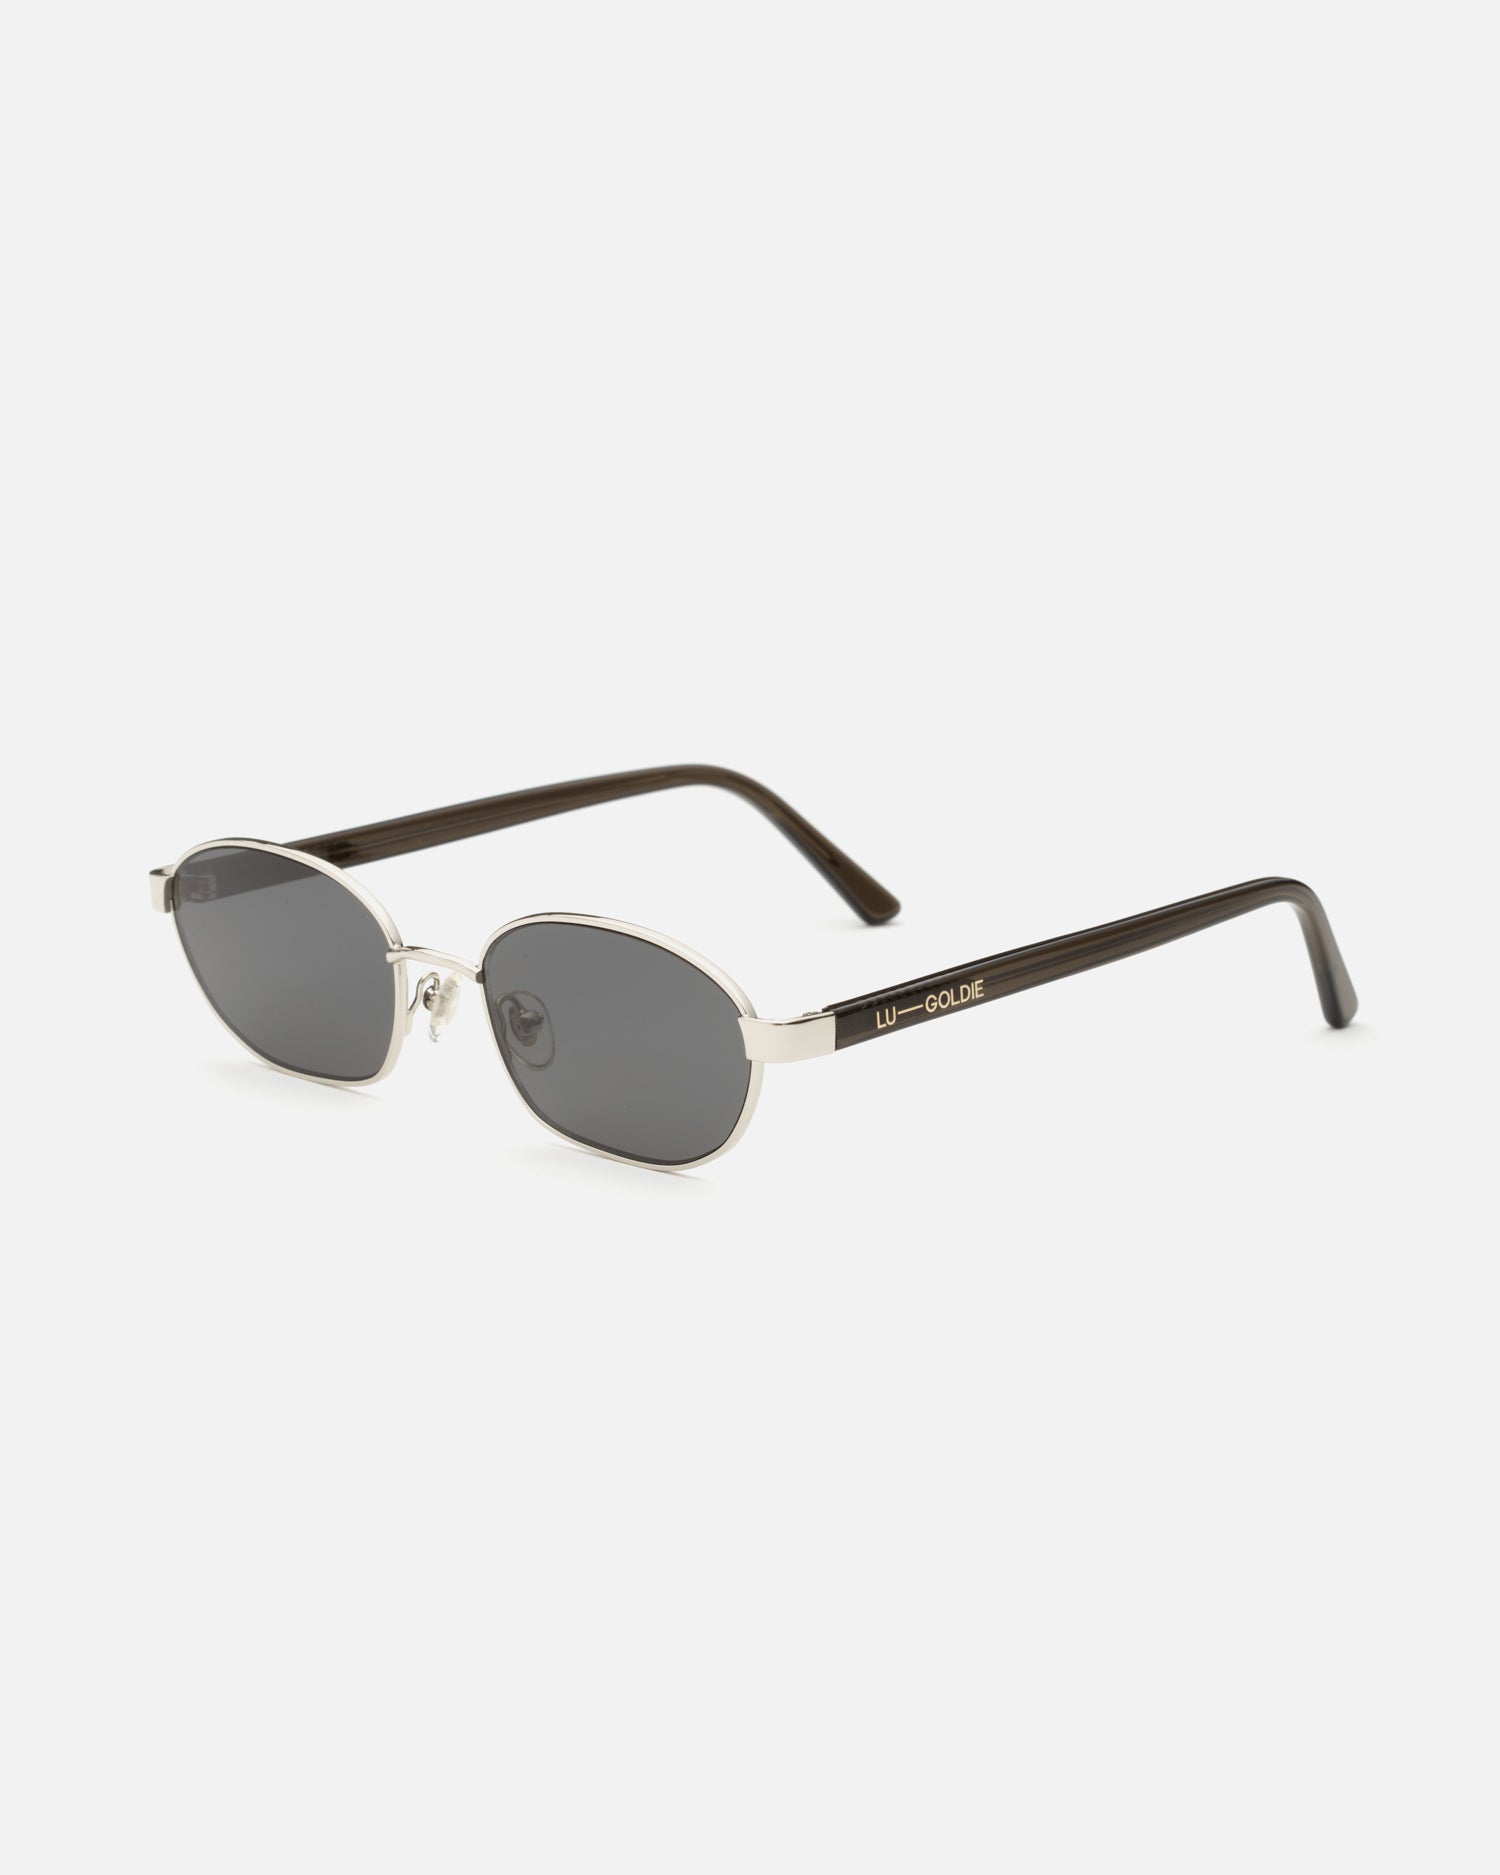 Lara Sunglasses in Silver by LU GOLDIE Eyewear